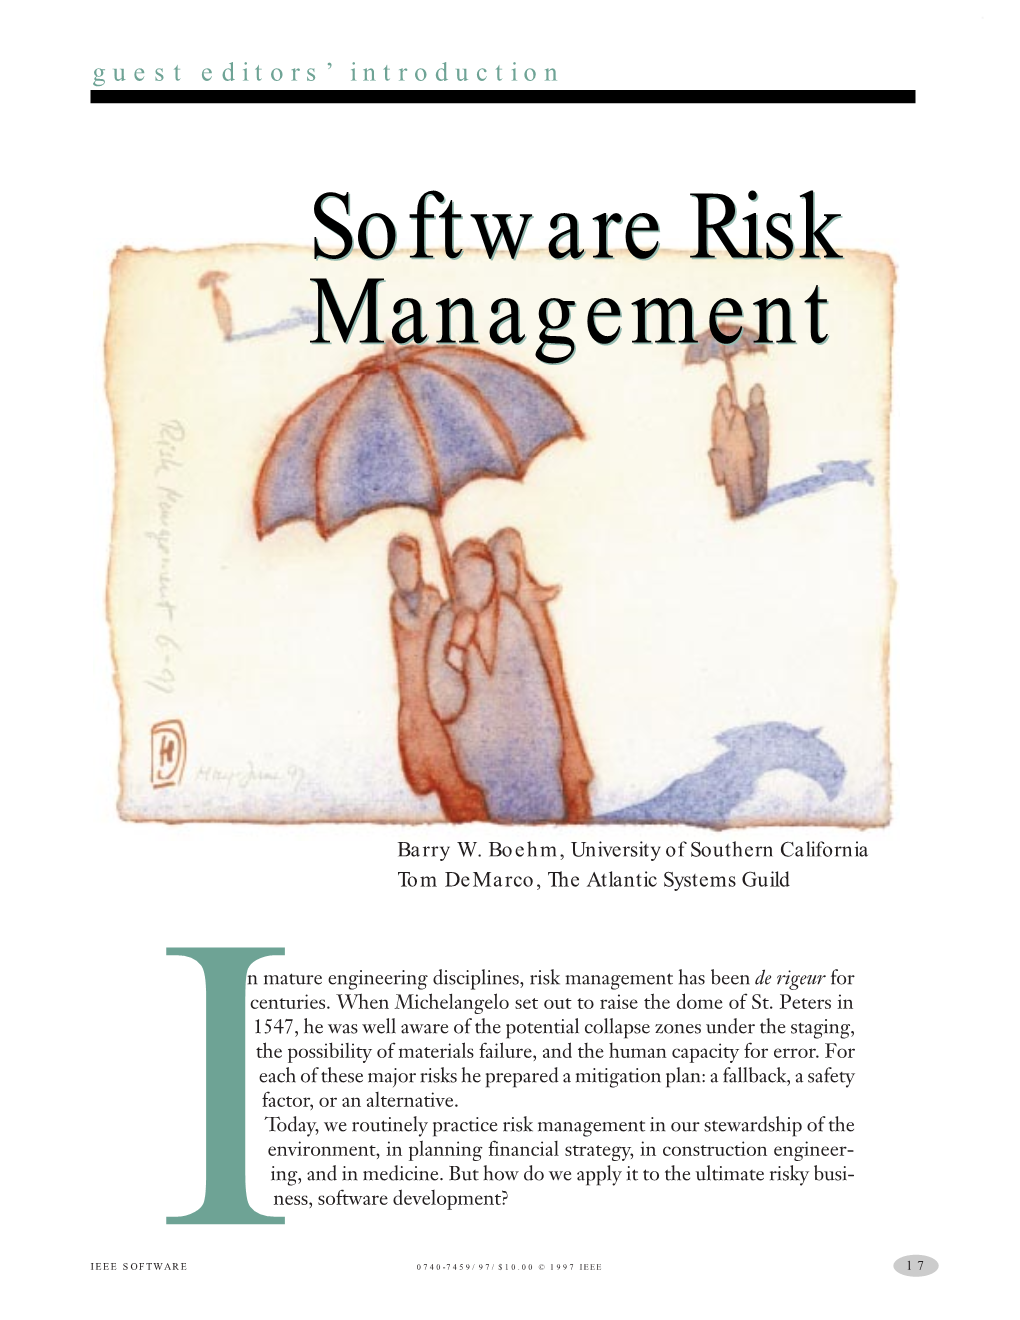 Software Risk Management Software Risk Management